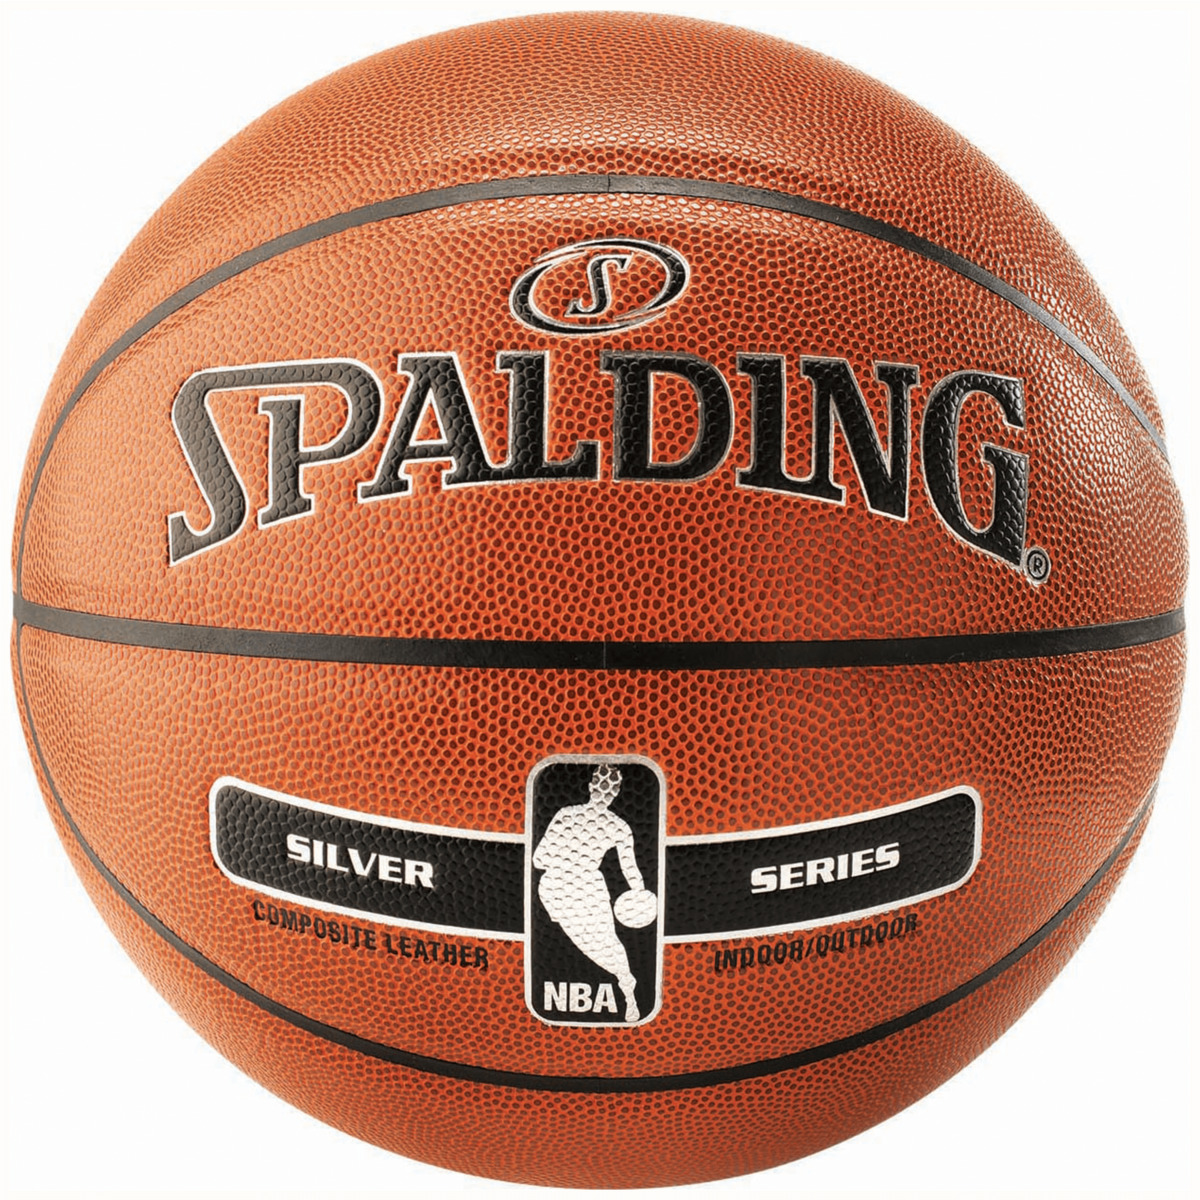 Spalding Basketball NBA Silver Size 5